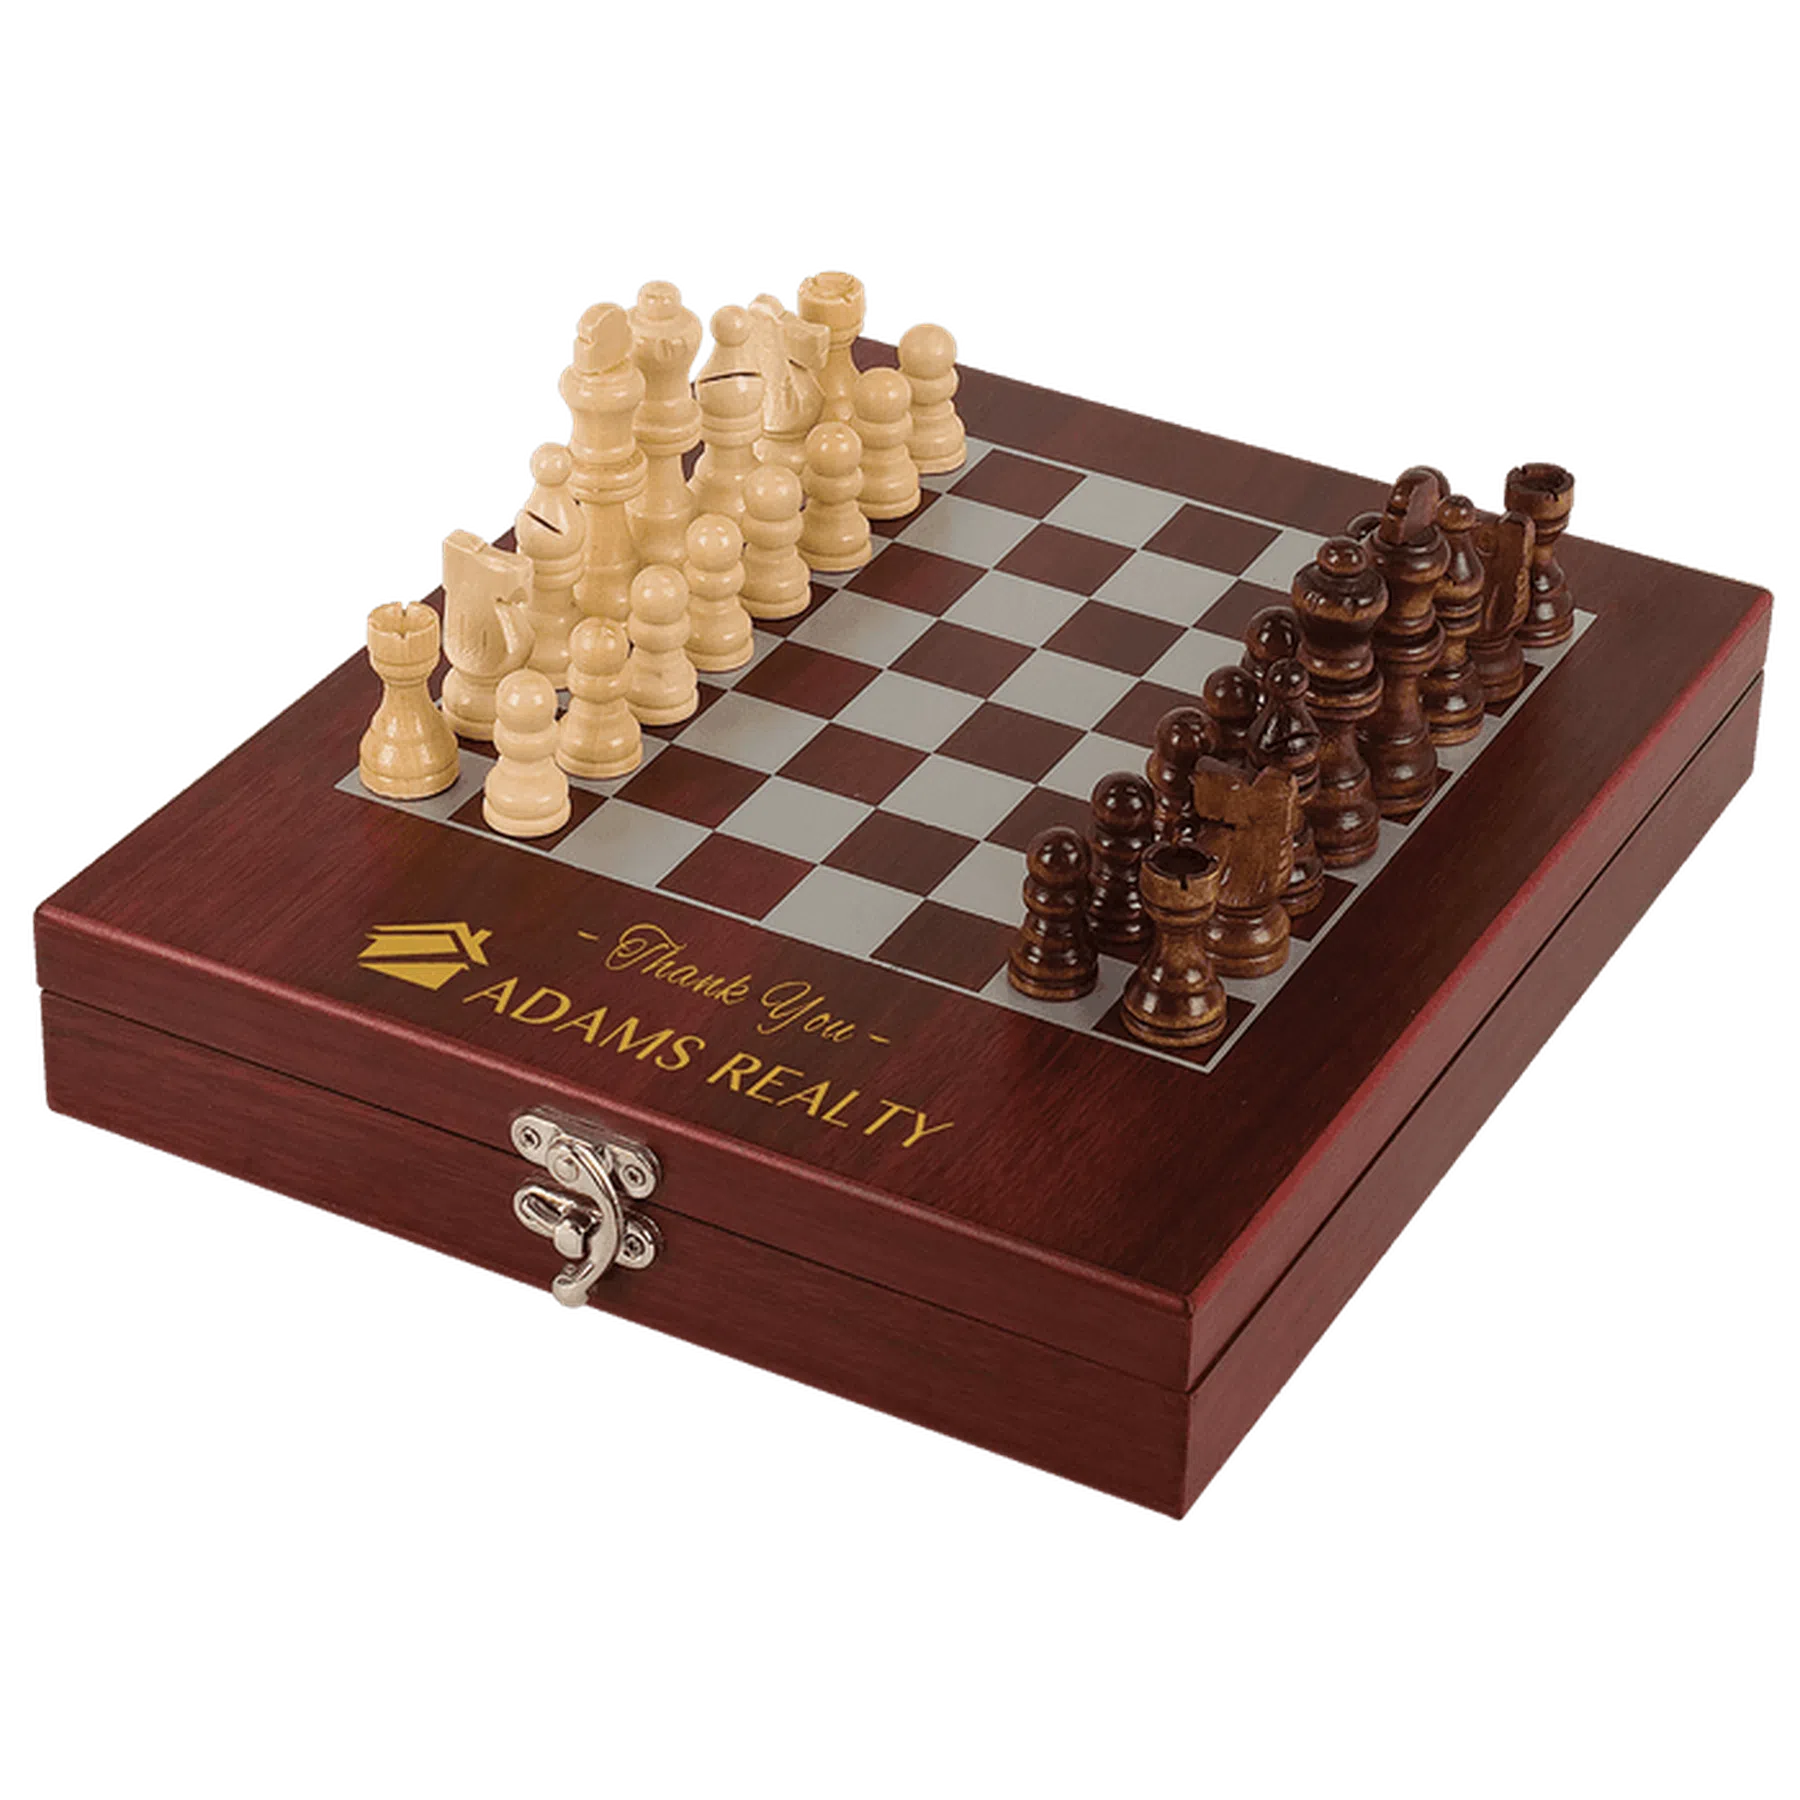 Rosewood Finish Chess Set